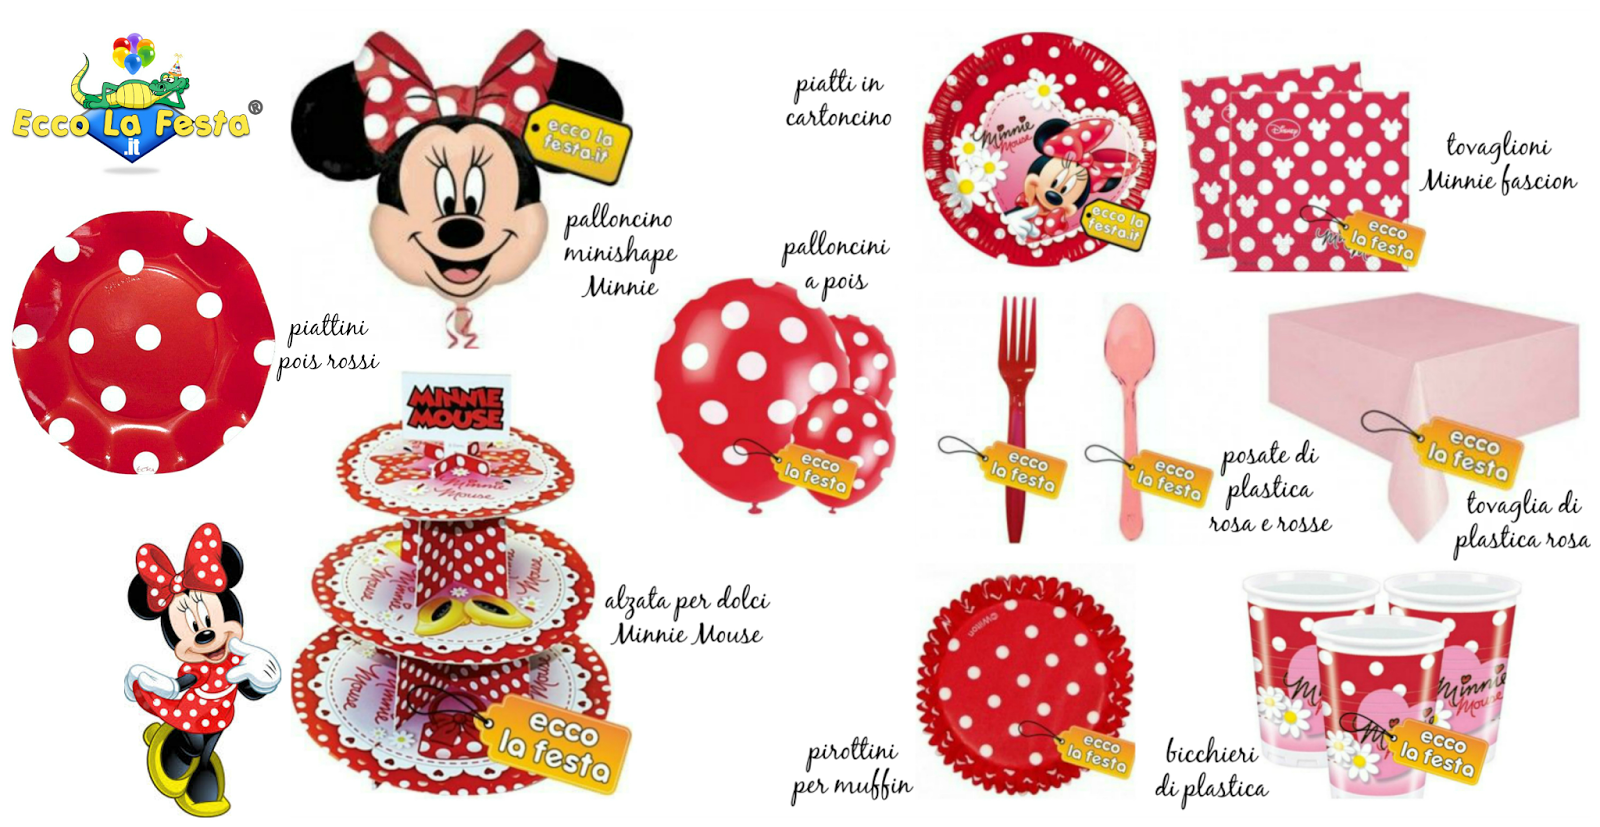 Compleanno bambini: festa a tema Minnie Mouse! | Sulla ...